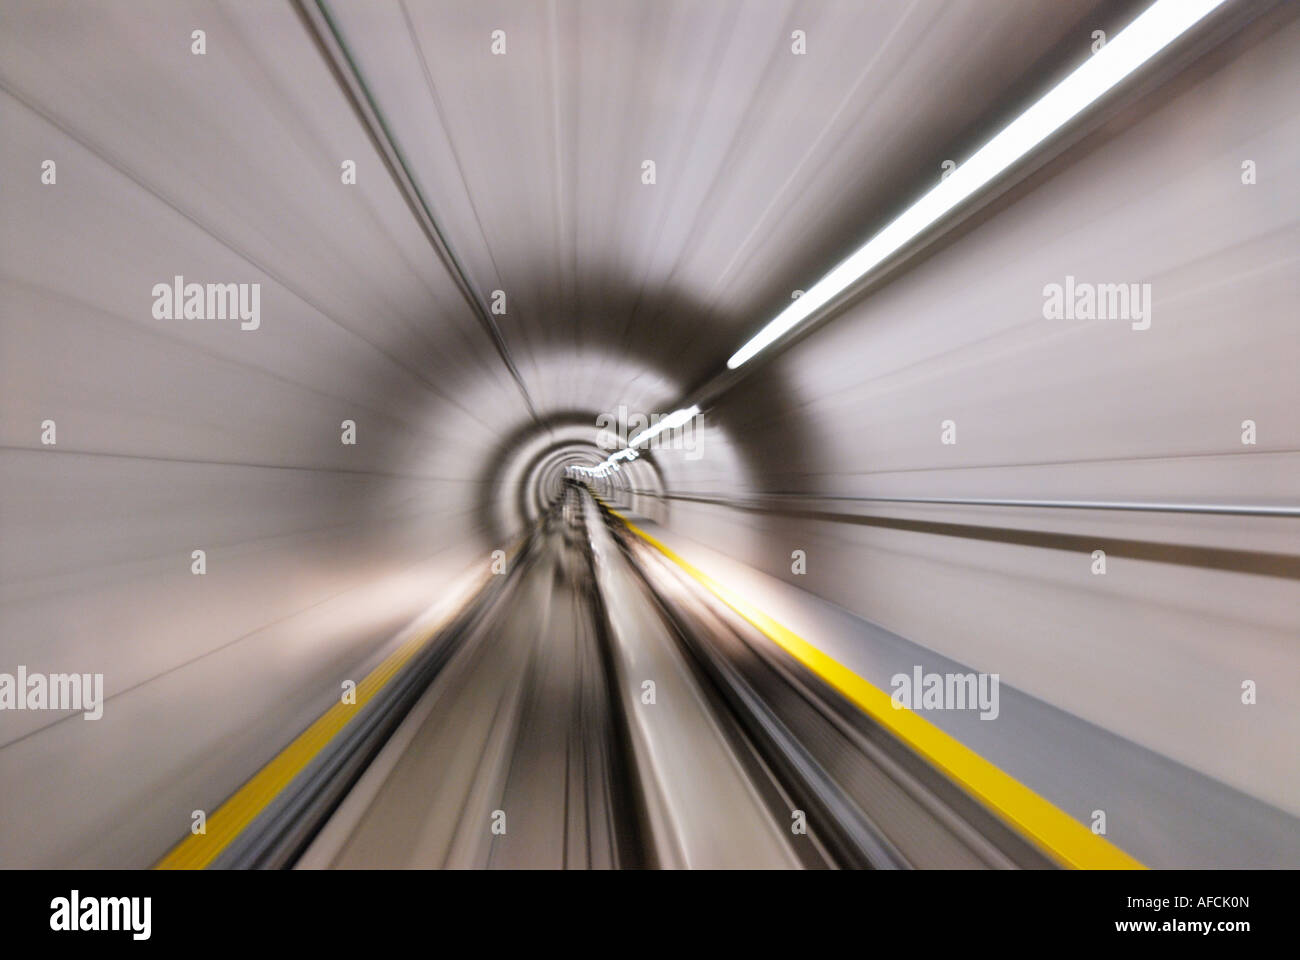 Les bornes de raccordement du métro, l'Aéroport International de Zurich, Suisse Banque D'Images